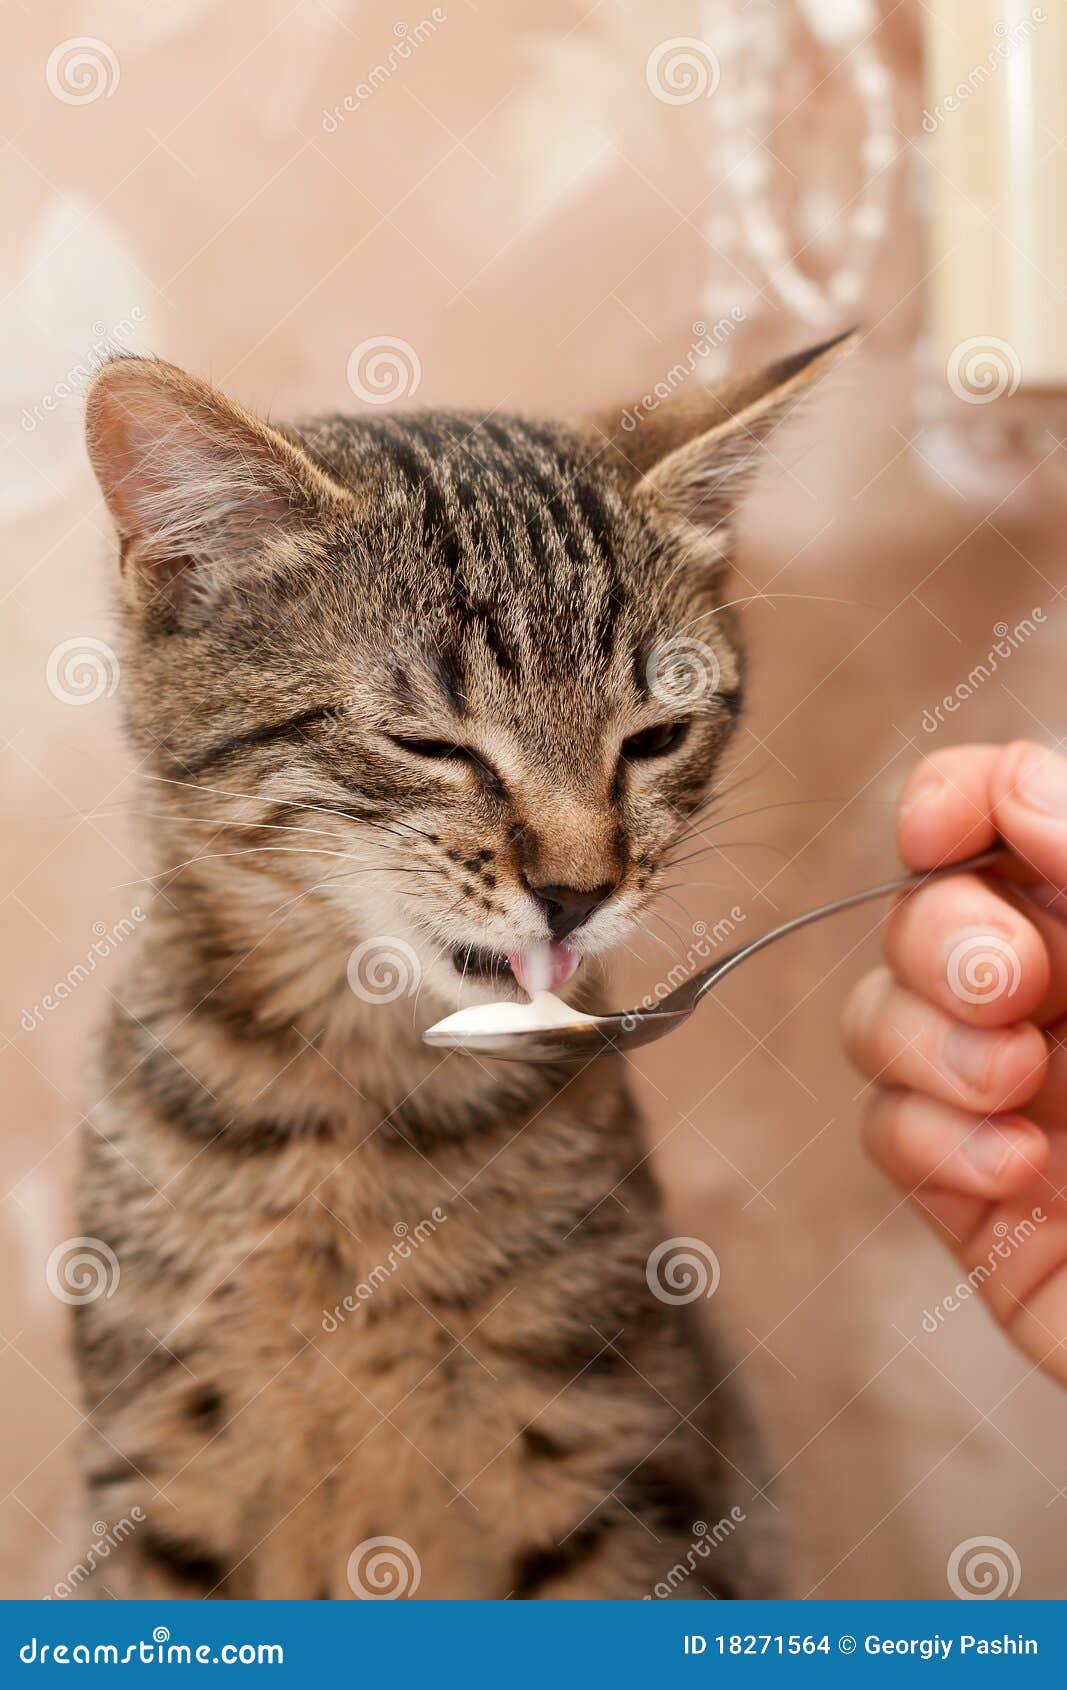 cat-eats-spoon-18271564.jpg